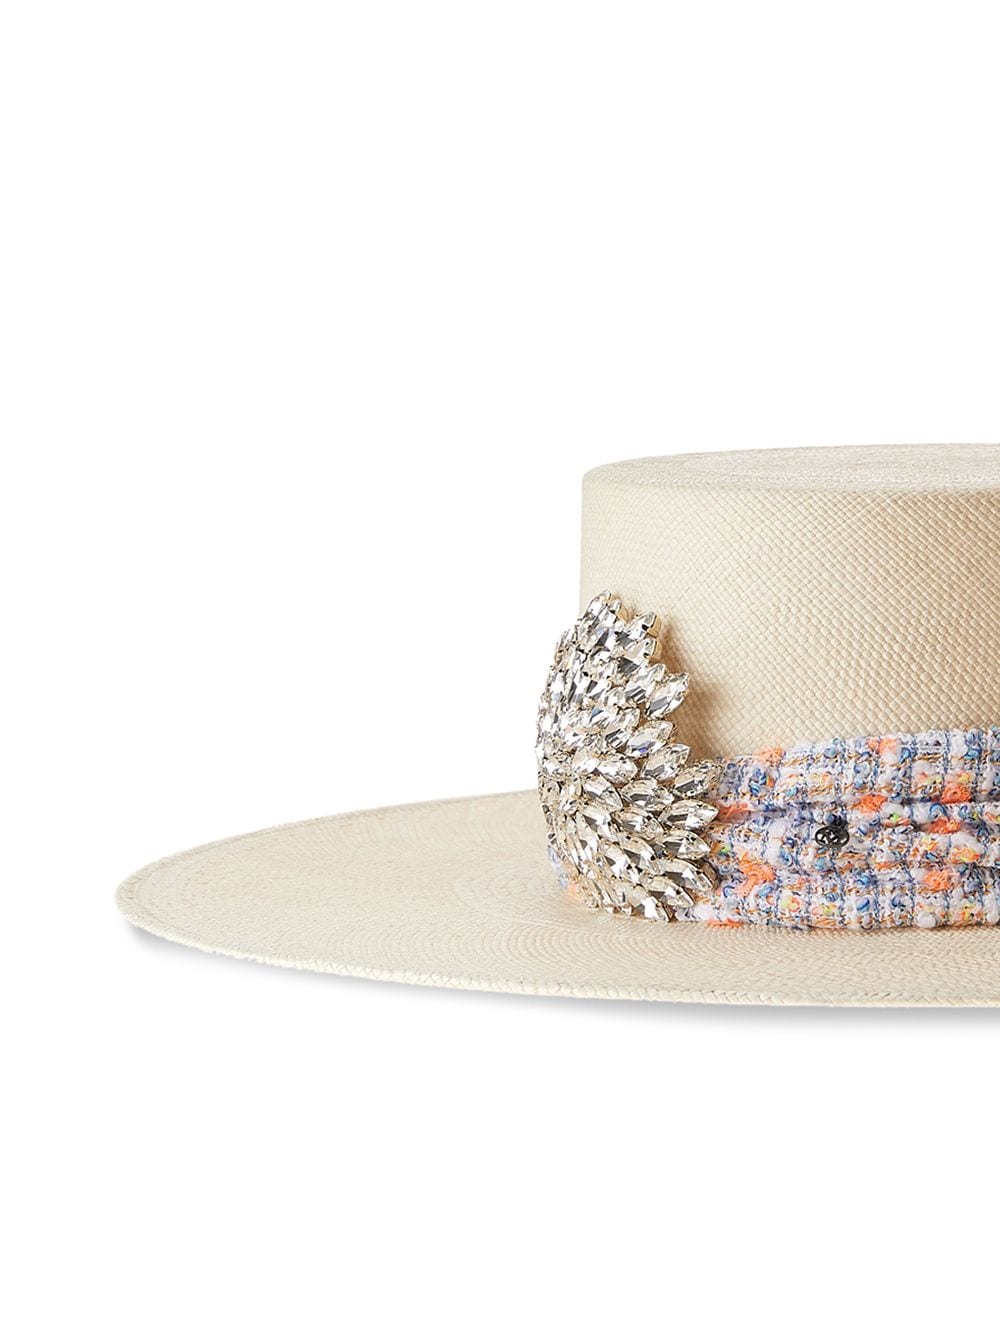 фото Maison michel соломенная шляпа с кристаллами